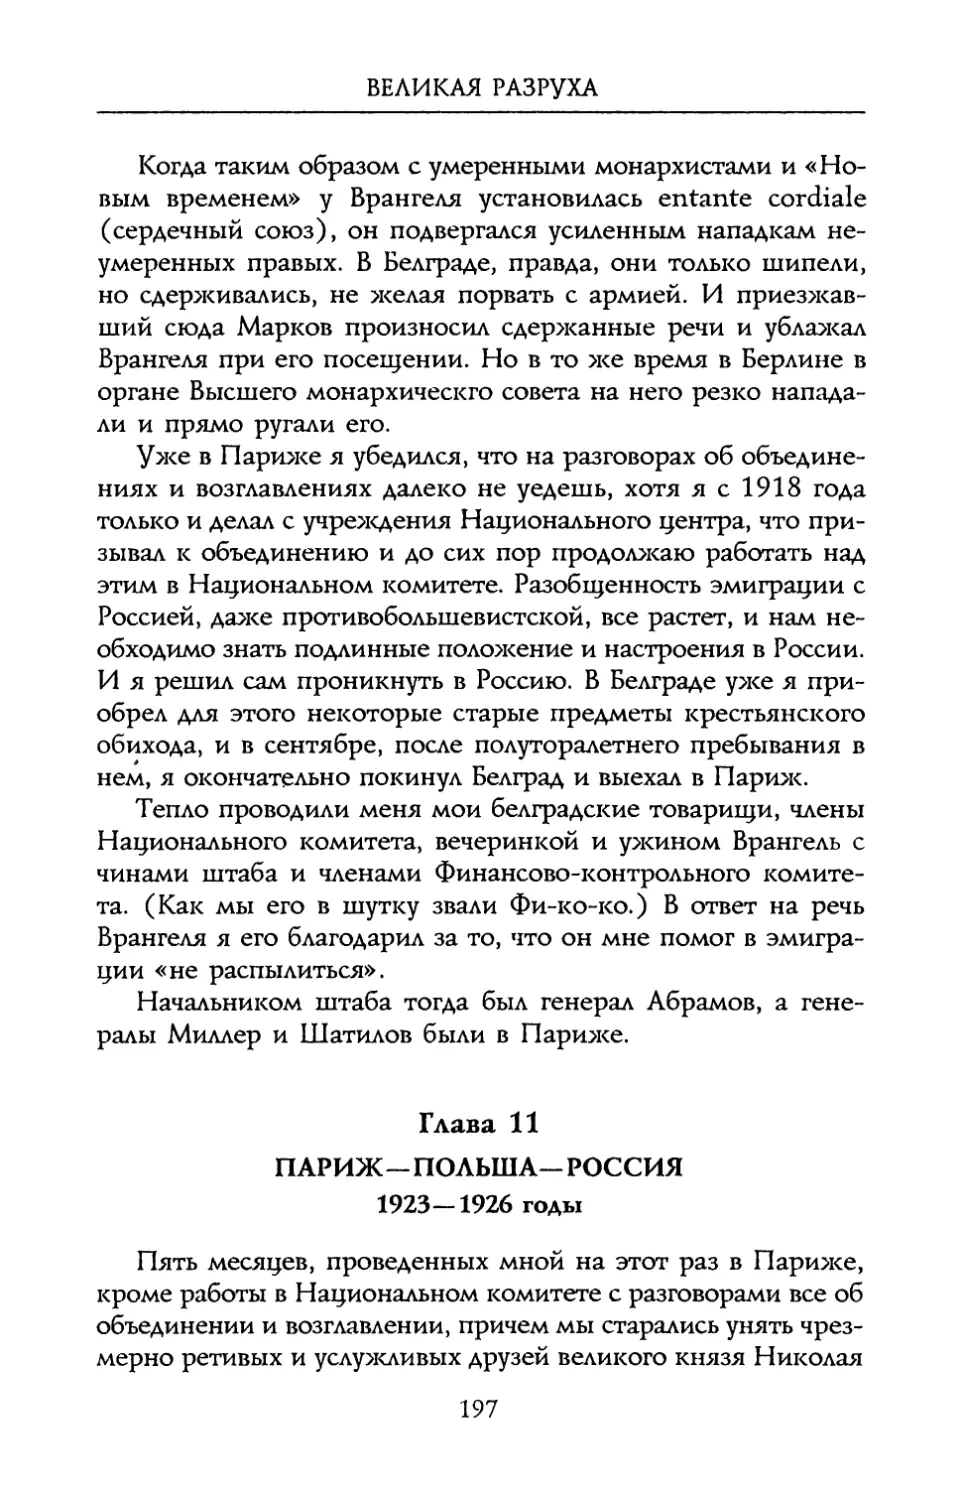 Глава 11. Париж – Польша – Россия. 1923 – 1926 годы